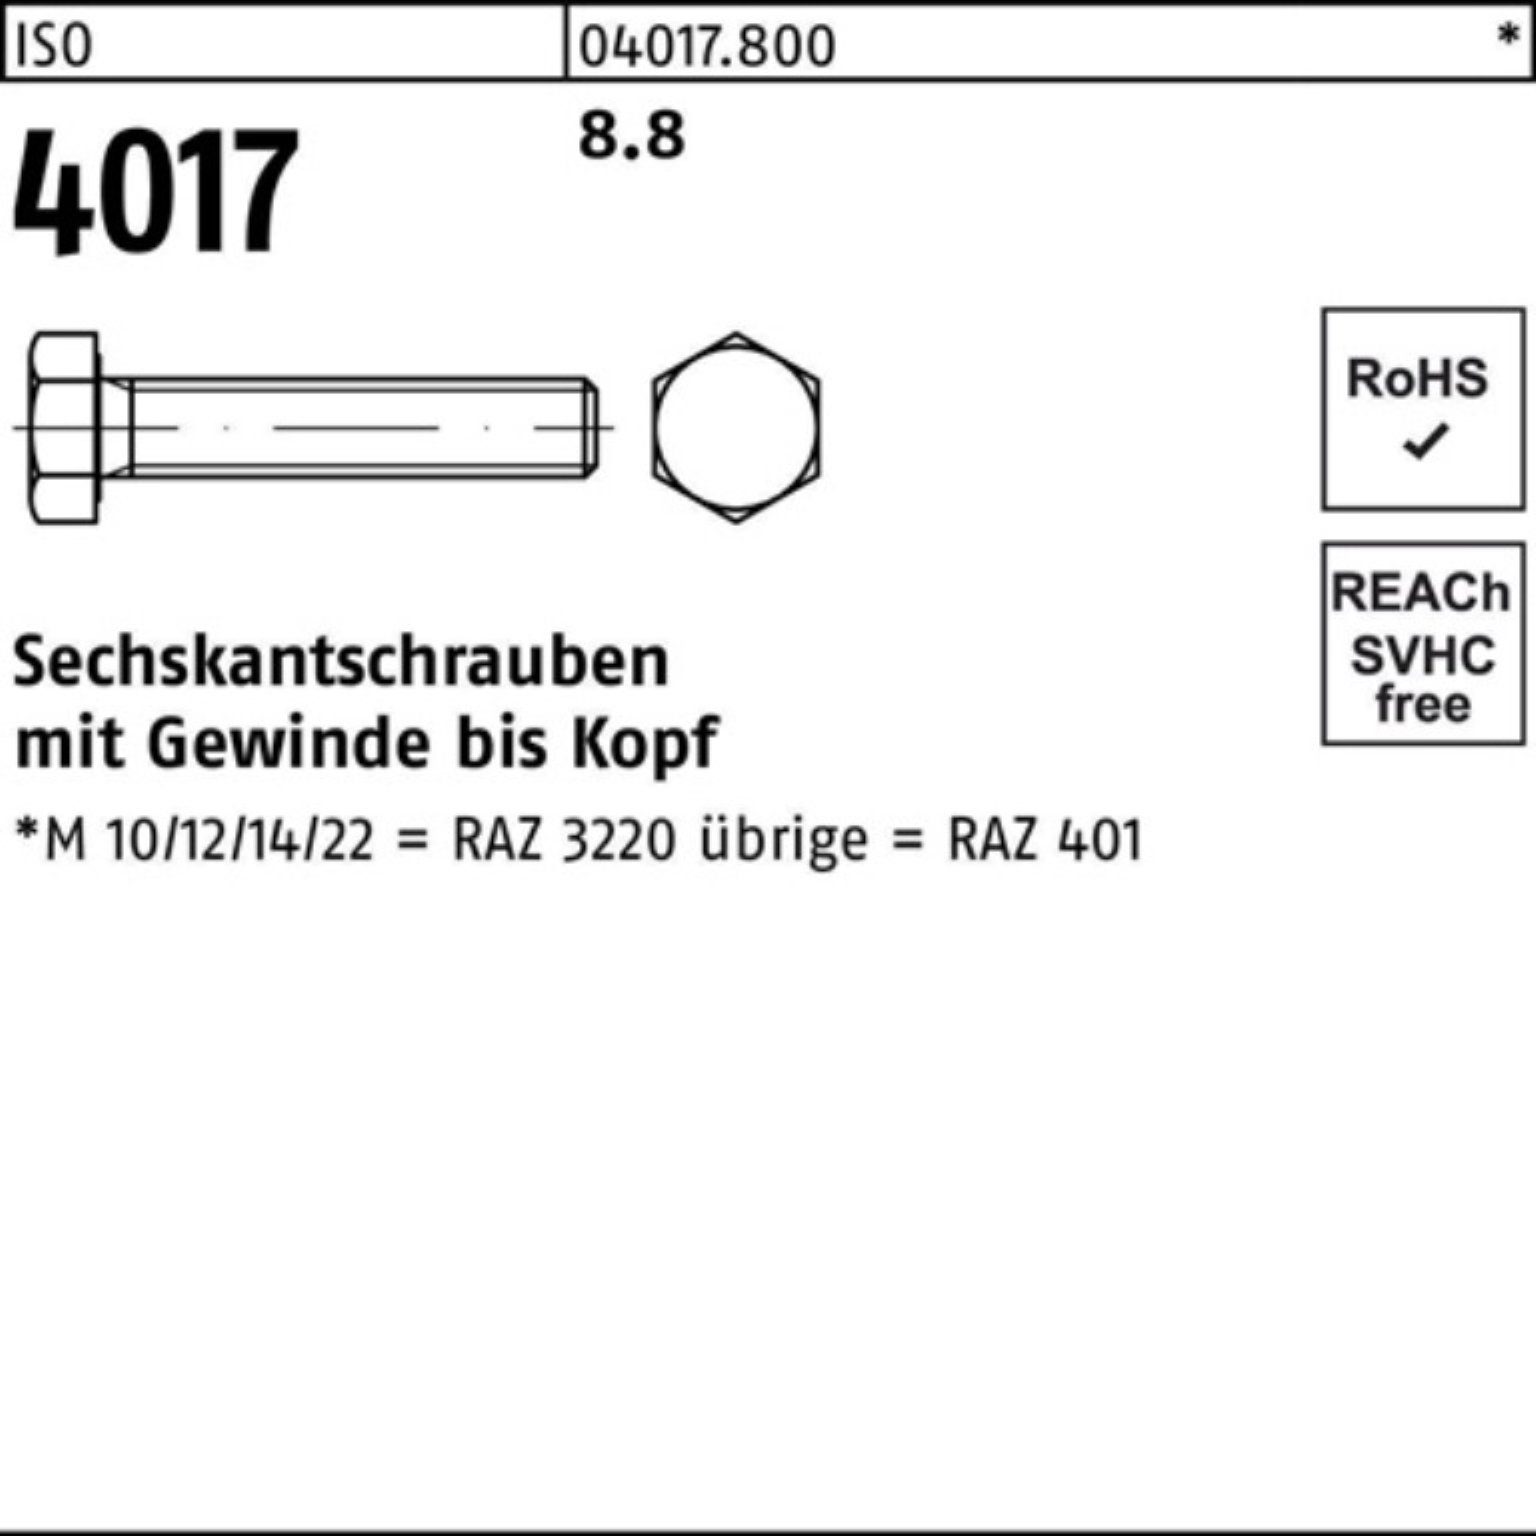 1 VG ISO Bufab ISO Sechskantschraube Stück 100 M36x 8.8 100er Pack Sechskantschraube 401 4017